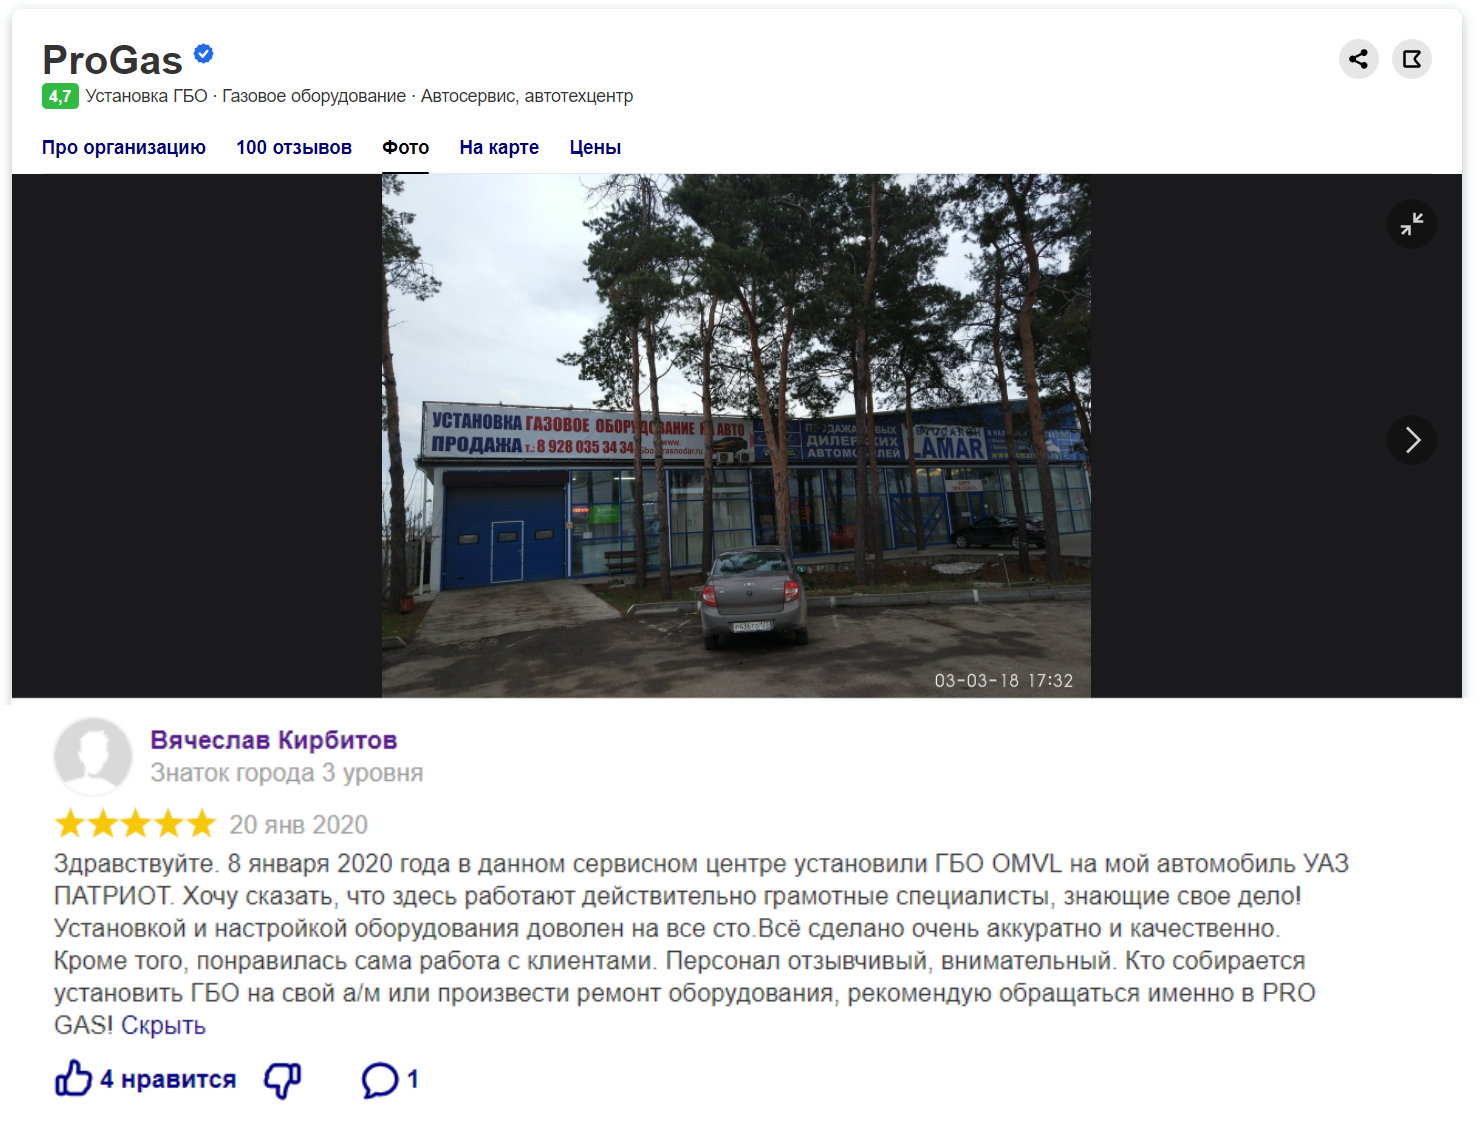 Отзыв о сервисе ГБО ProGas от Вячеслава Кирбитова